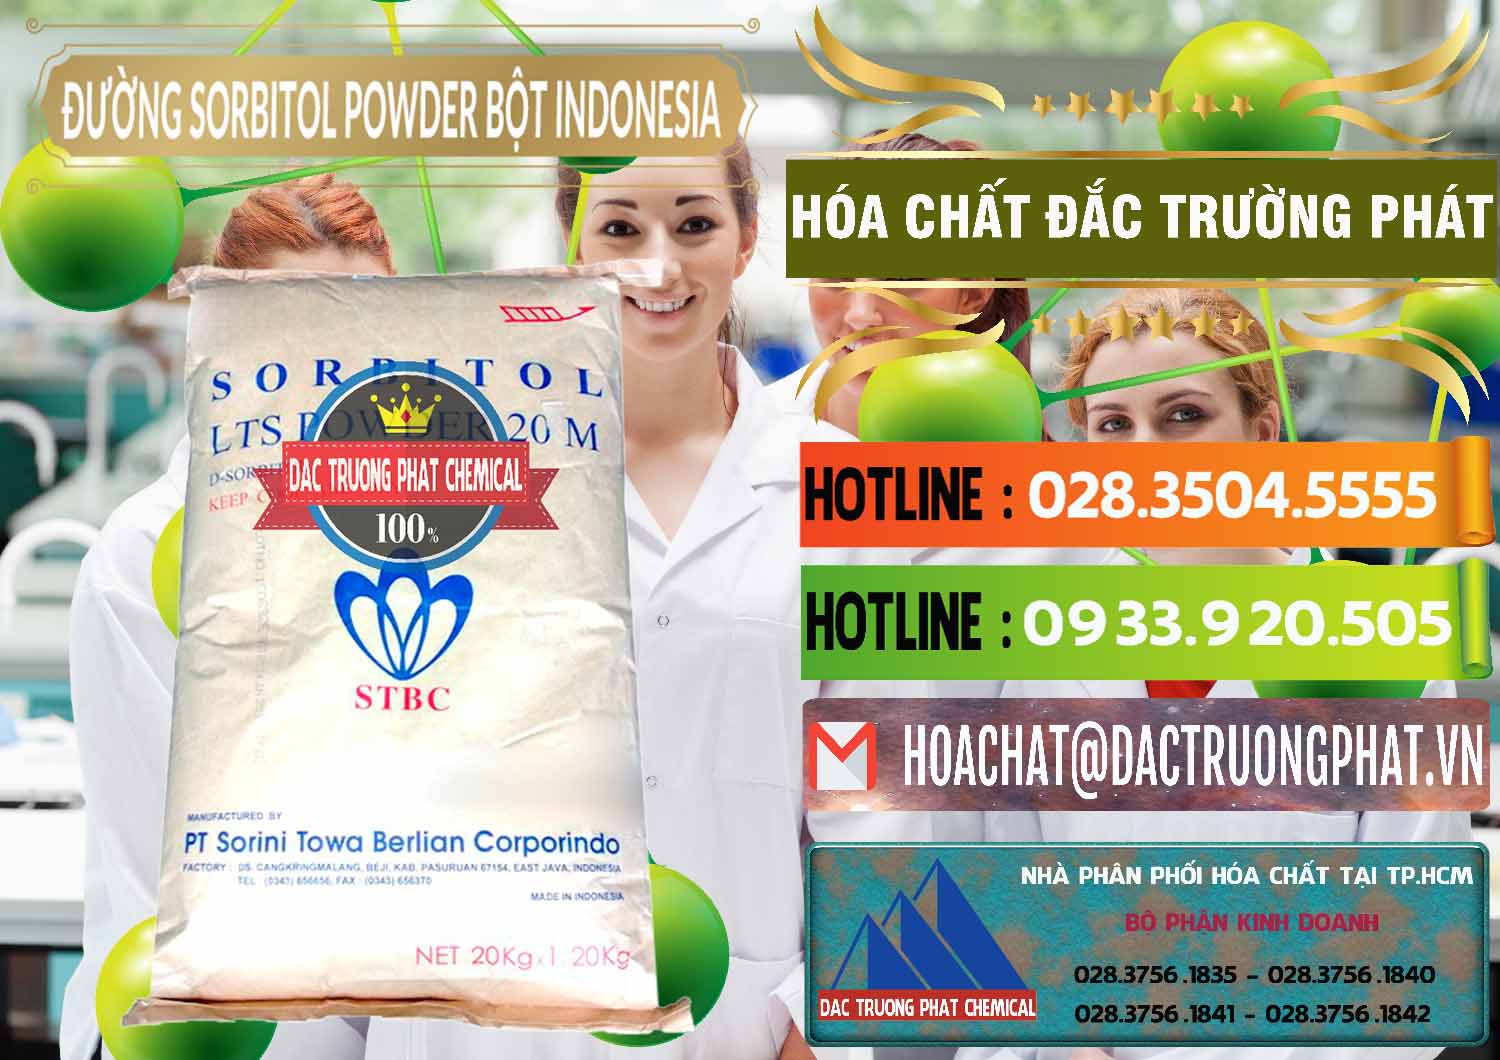 Nơi bán & cung ứng D-Sorbitol Bột - C6H14O6 Food Grade Indonesia - 0320 - Nơi cung cấp ( kinh doanh ) hóa chất tại TP.HCM - cungcaphoachat.com.vn